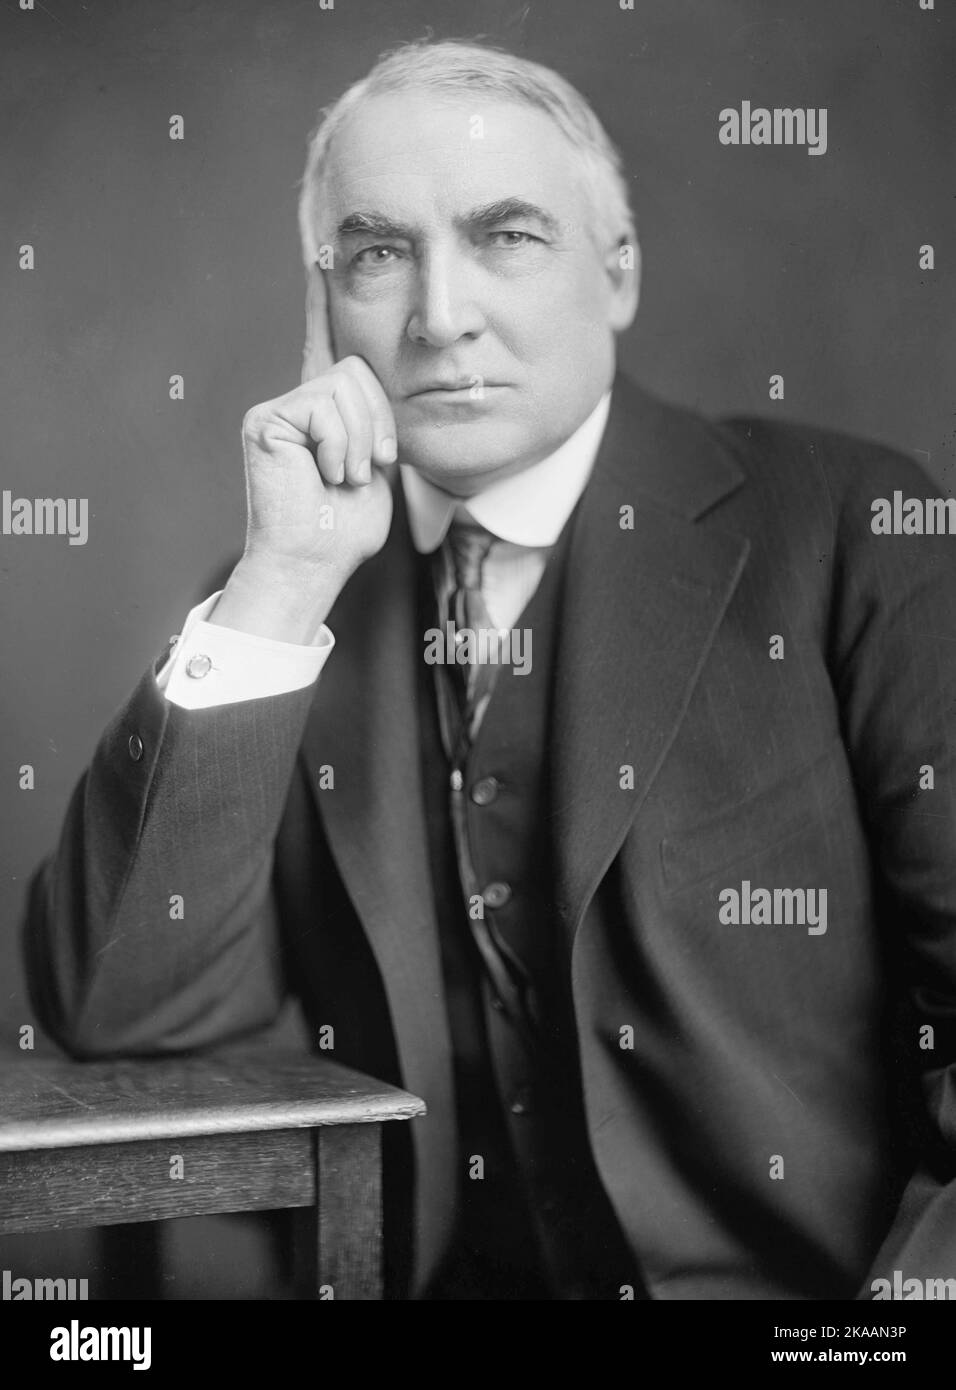 Warren G. Harding, por Harris & Ewing. Warren Gamaliel Harding (2 de noviembre de 1865 – 2 de agosto de 1923) fue el 29th presidente de los Estados Unidos, sirviendo desde 1921 hasta su muerte en 1923. Foto de stock